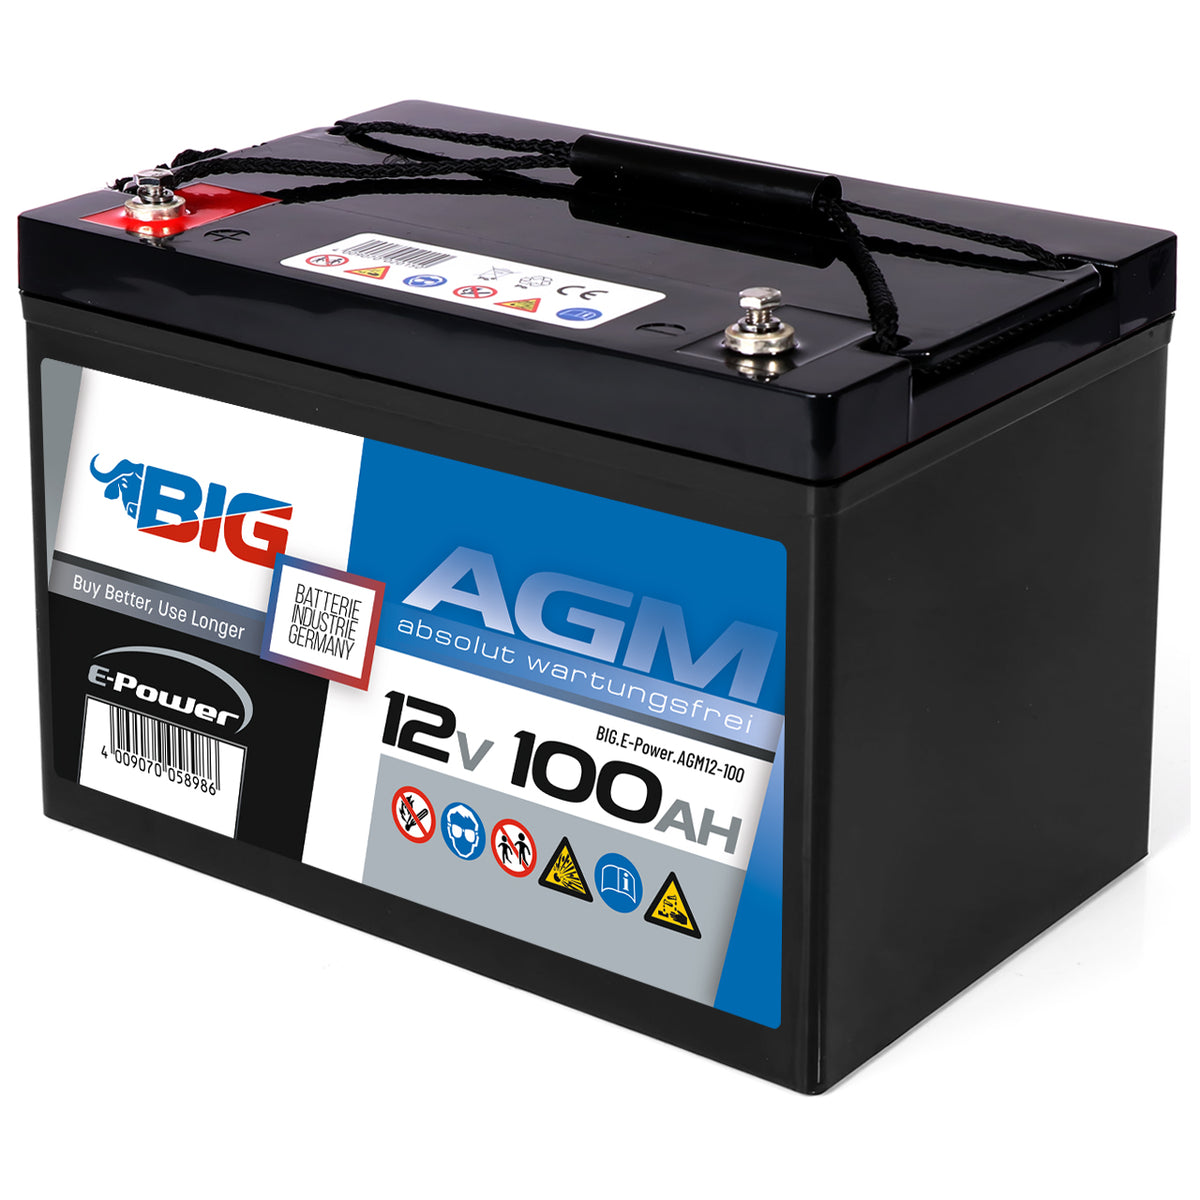 BIG E-Power AGM 12V 100Ah